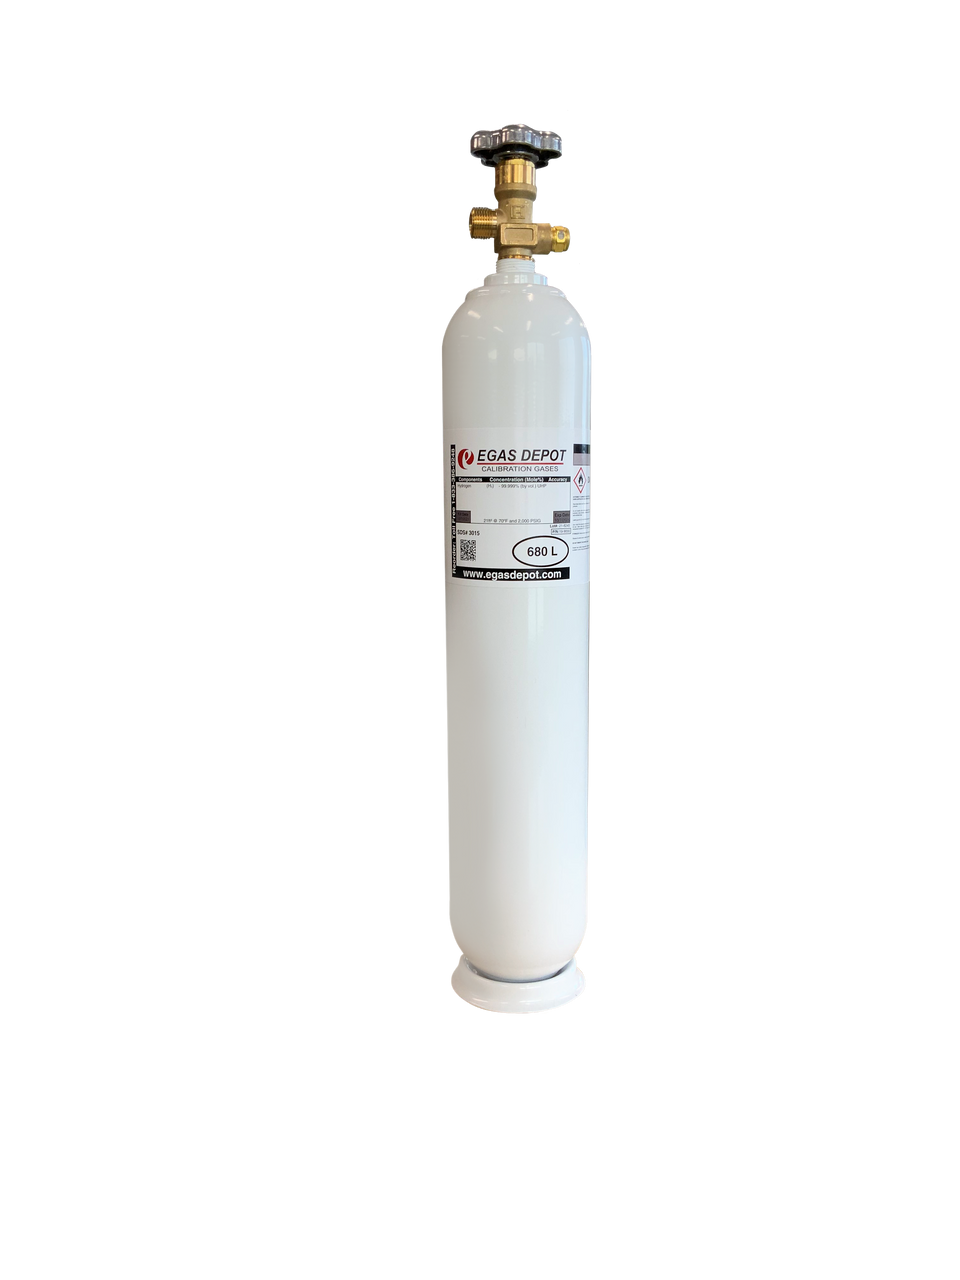 680 Liter-Carbon Monoxide 30 ppm/ Air